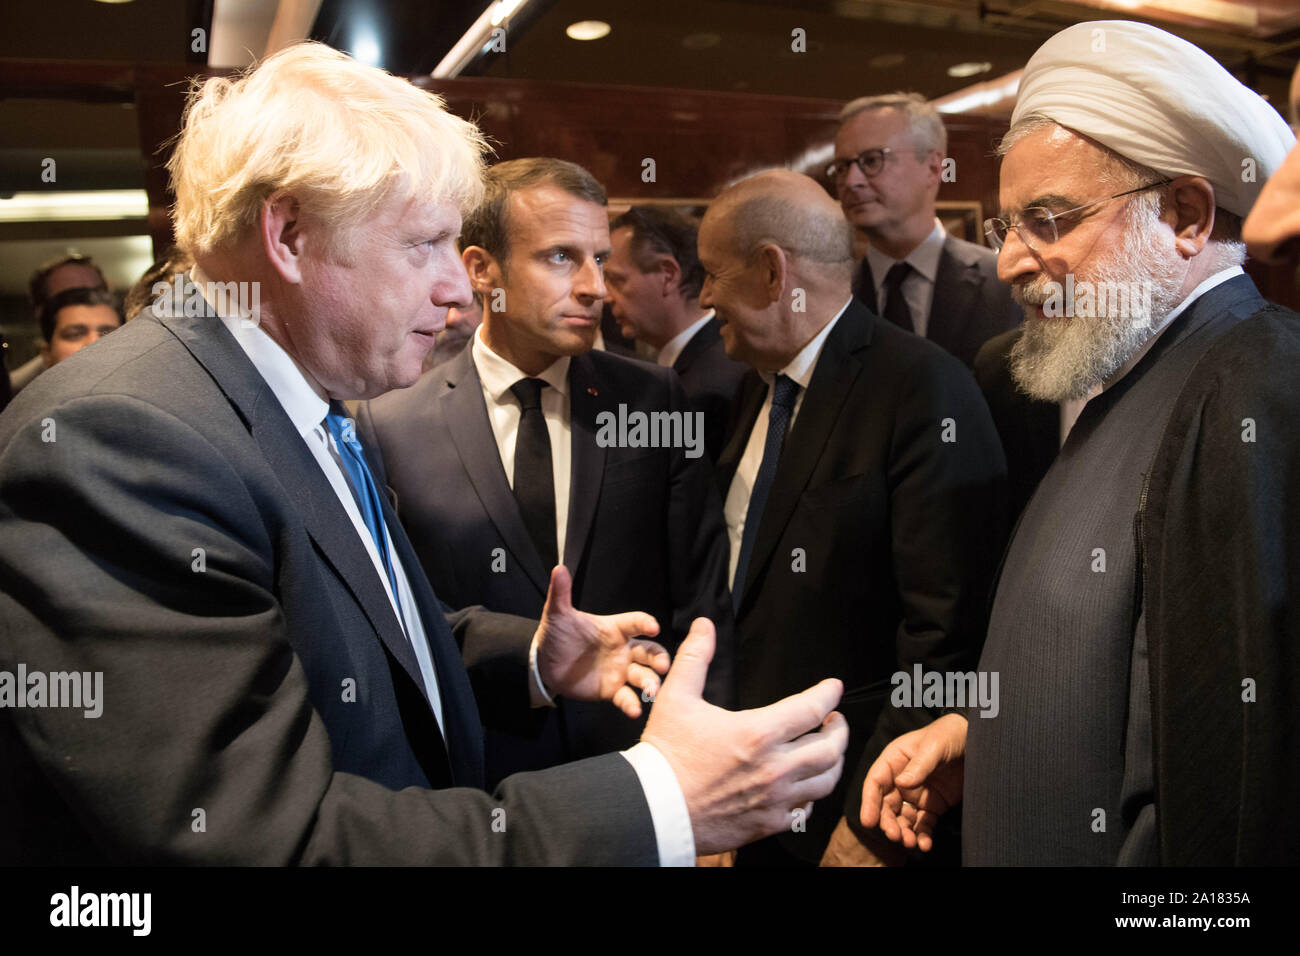 Premier ministre Boris Johnson (à gauche), le président de la France, Emmanuel Macron (centre) et le président iranien Hassan Rohani (à droite) rencontre à la 74e session de l'Assemblée générale des Nations Unies, au Siège des Nations Unies à New York, USA. Banque D'Images